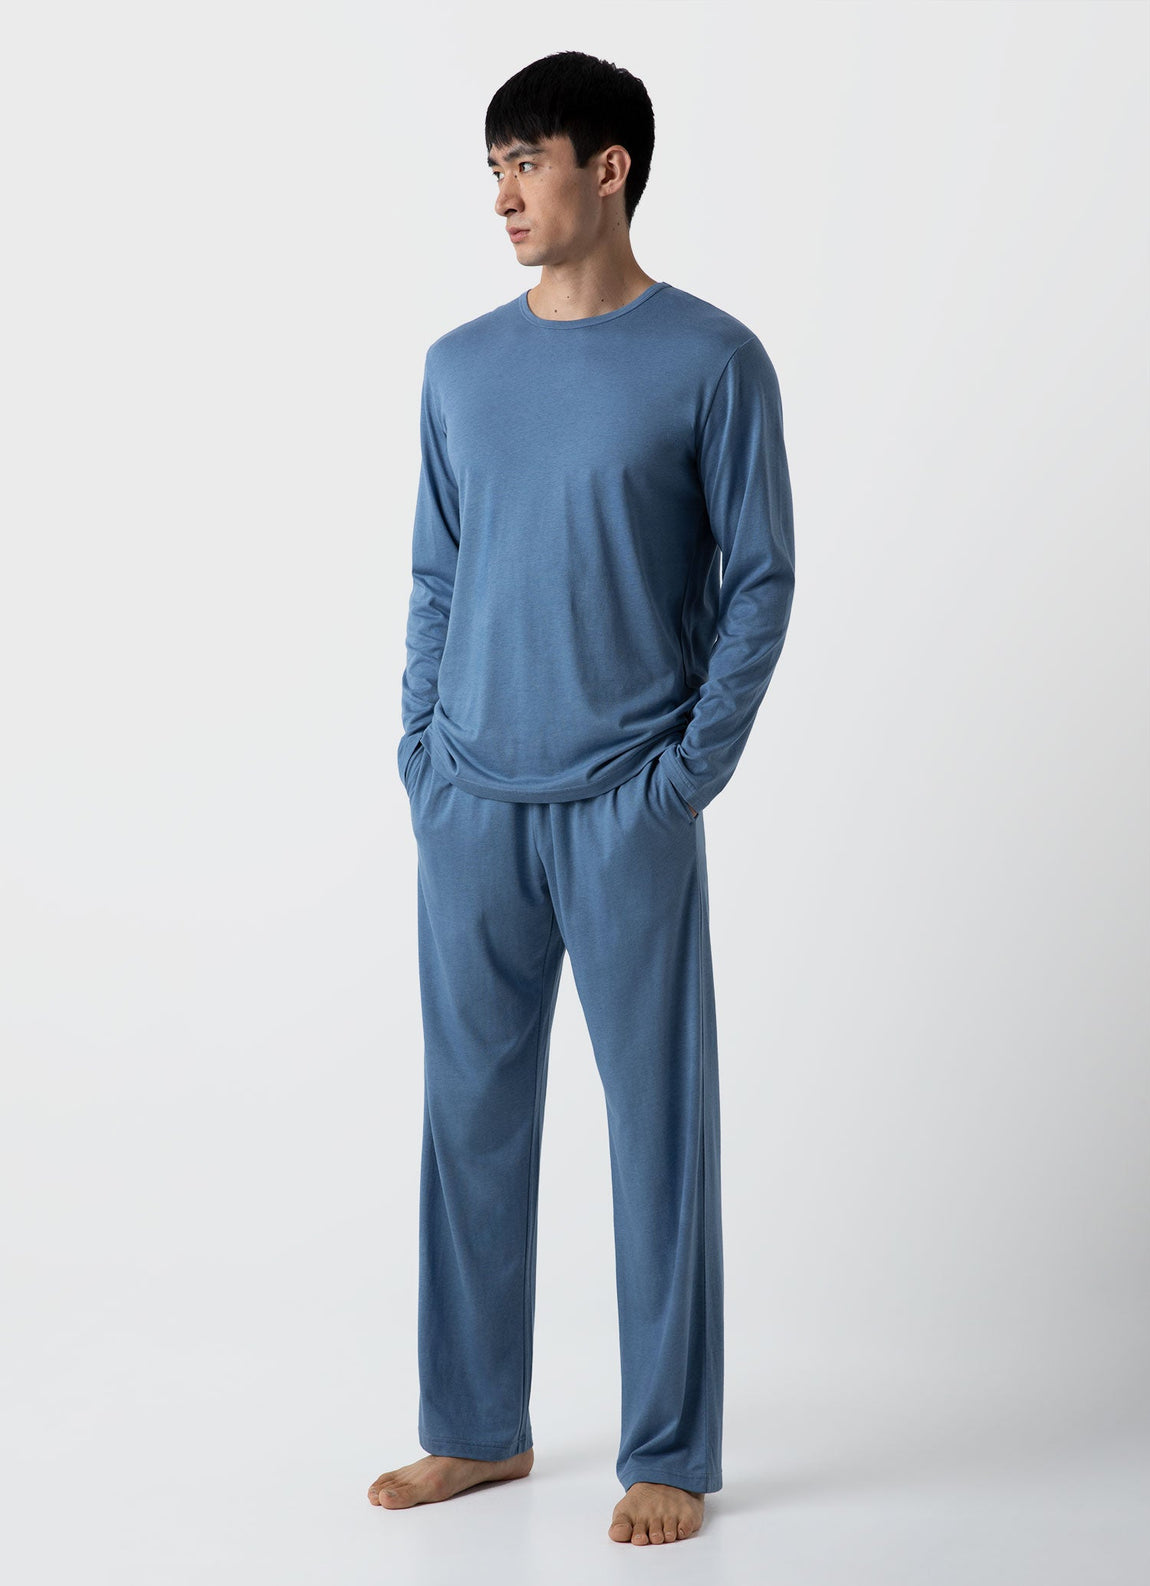 Men's Cotton Modal Lounge Long Sleeve T-shirt in Bluestone